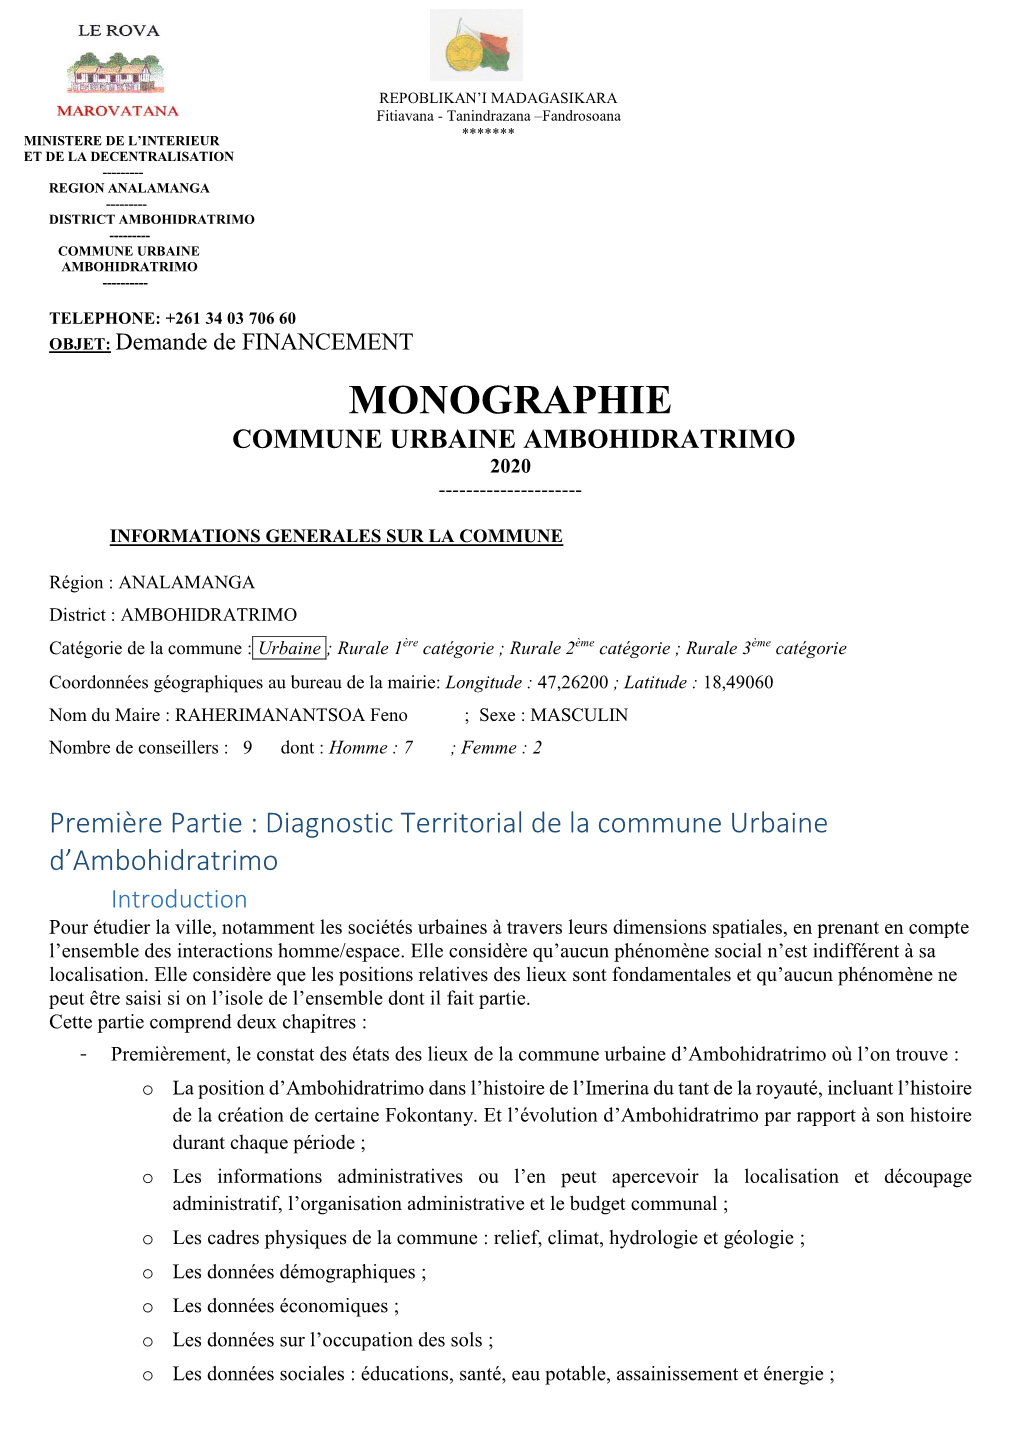 Monographie Commune Urbaine Ambohidratrimo 2020